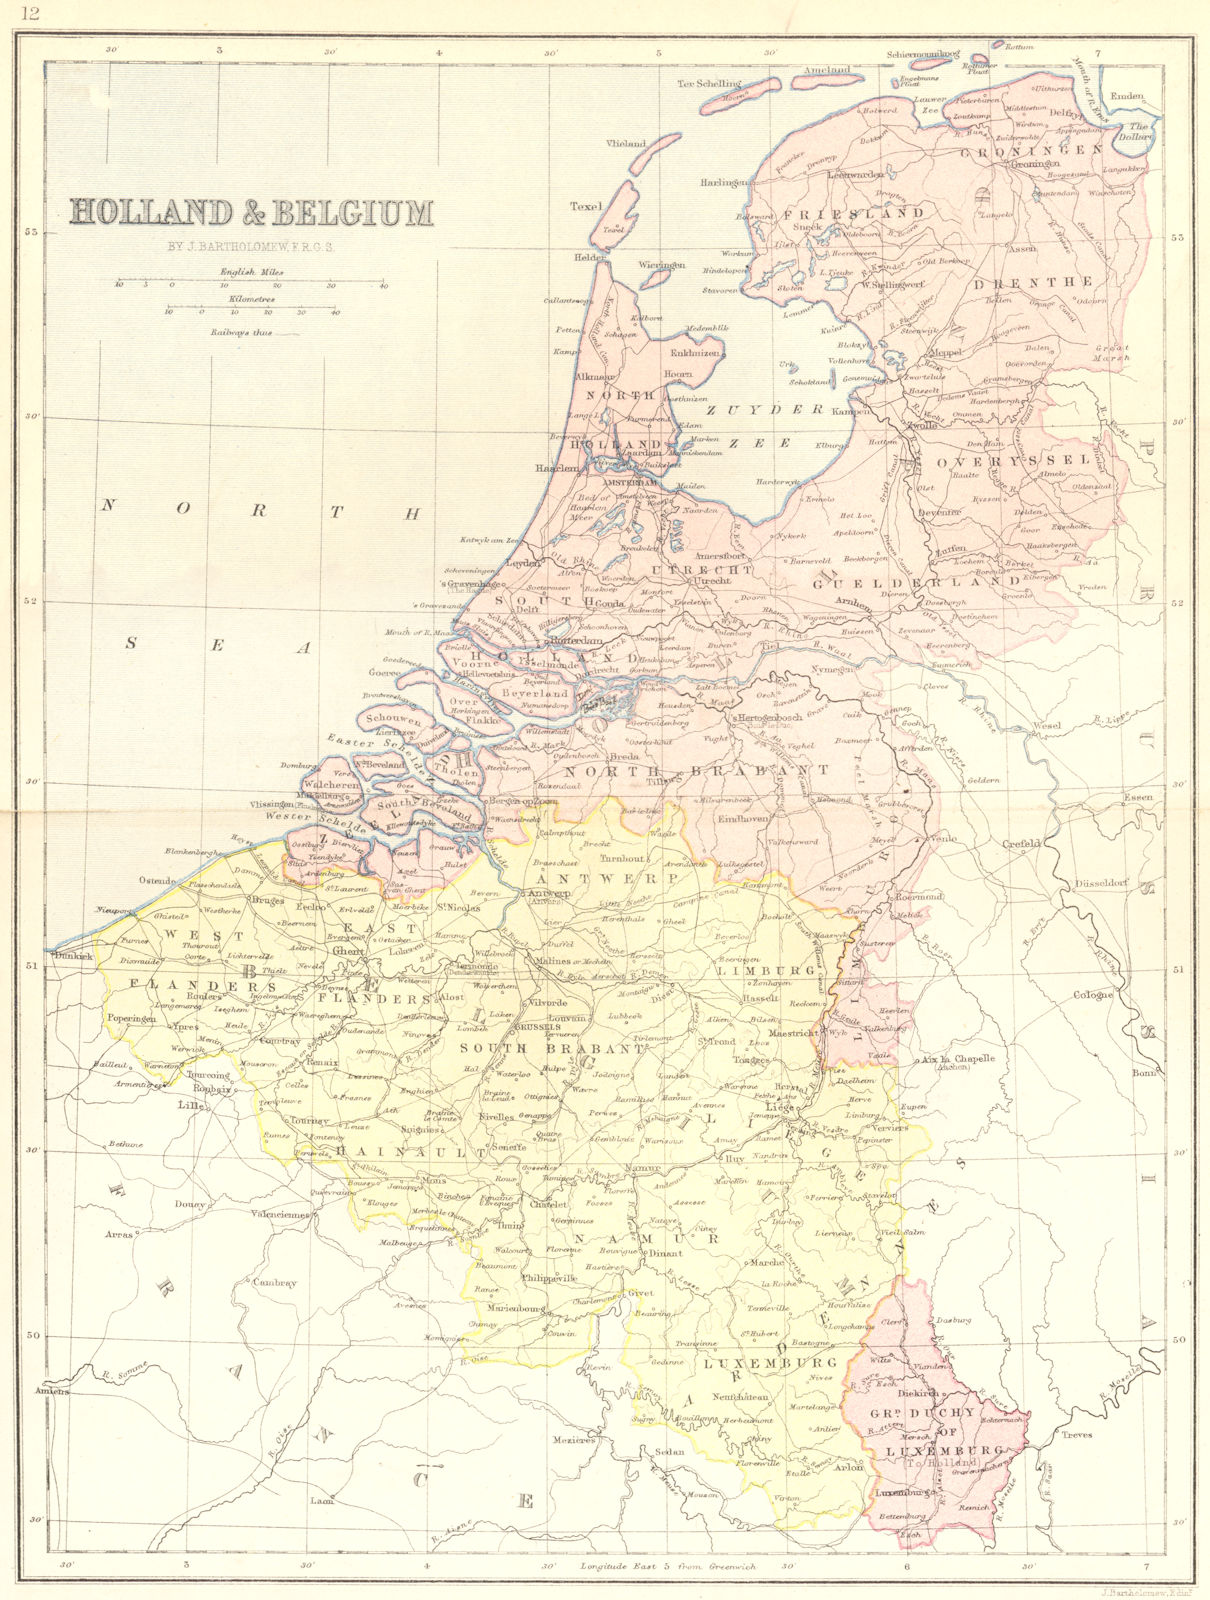 NETHERLANDS. & Belgium 1870 old antique vintage map plan chart